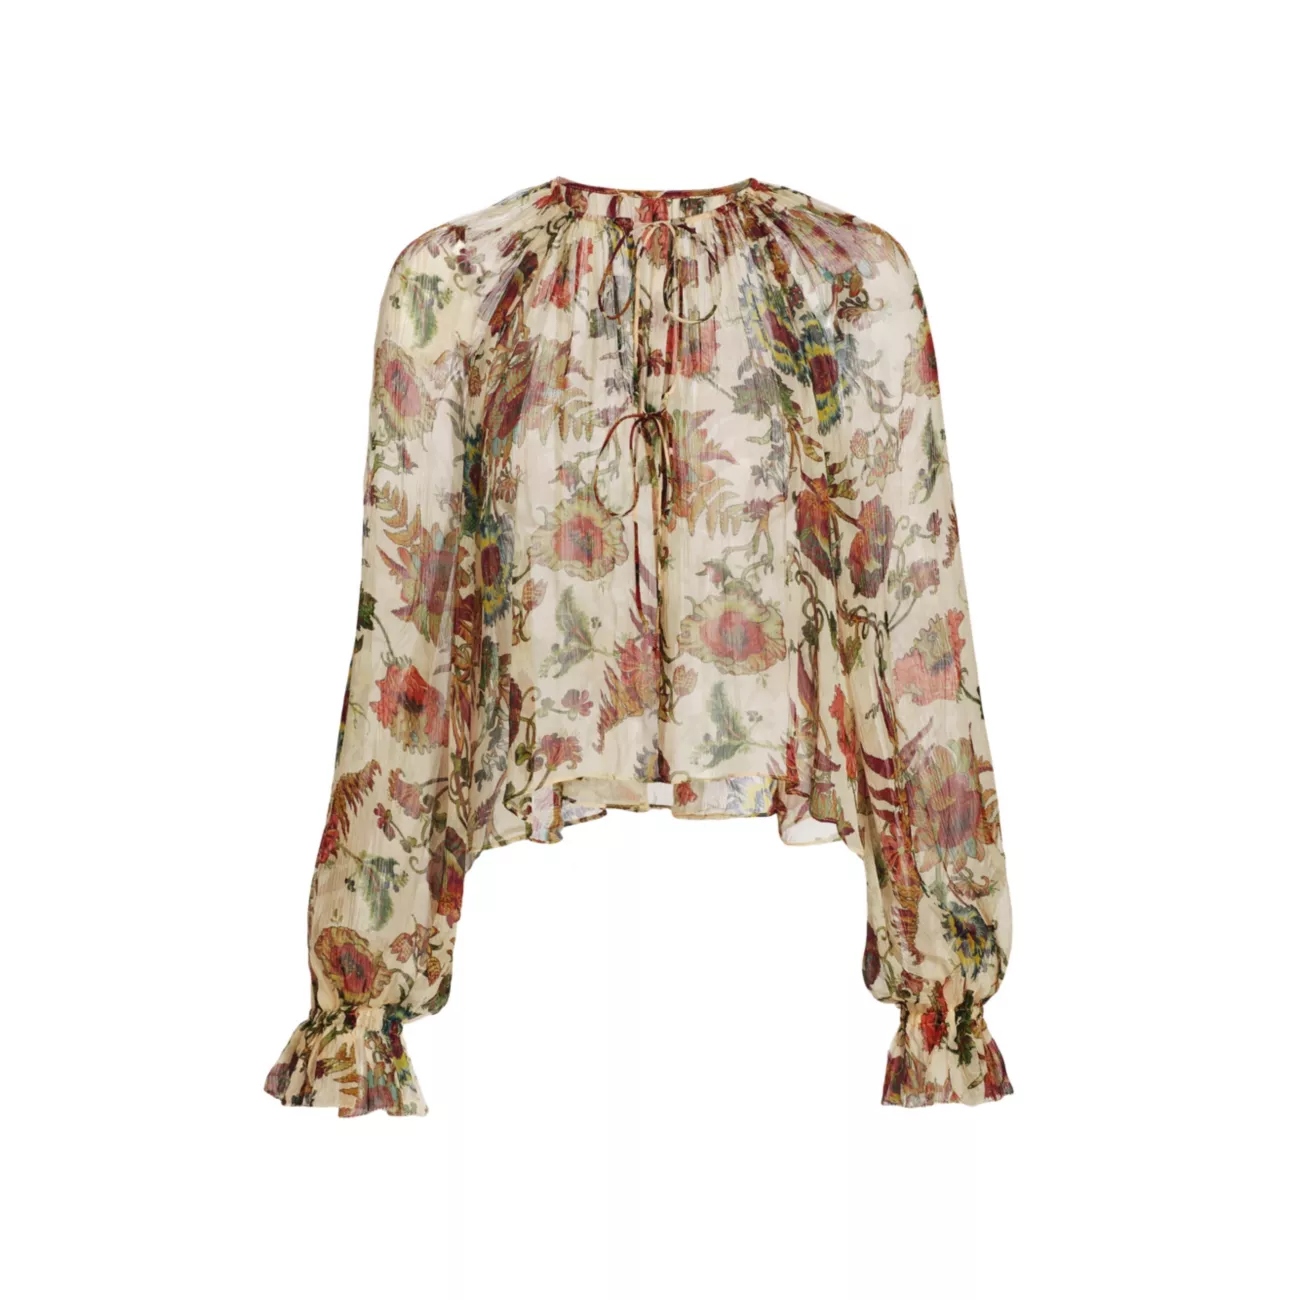 Шелковая блузка Bernadette с цветочным принтом Ulla Johnson